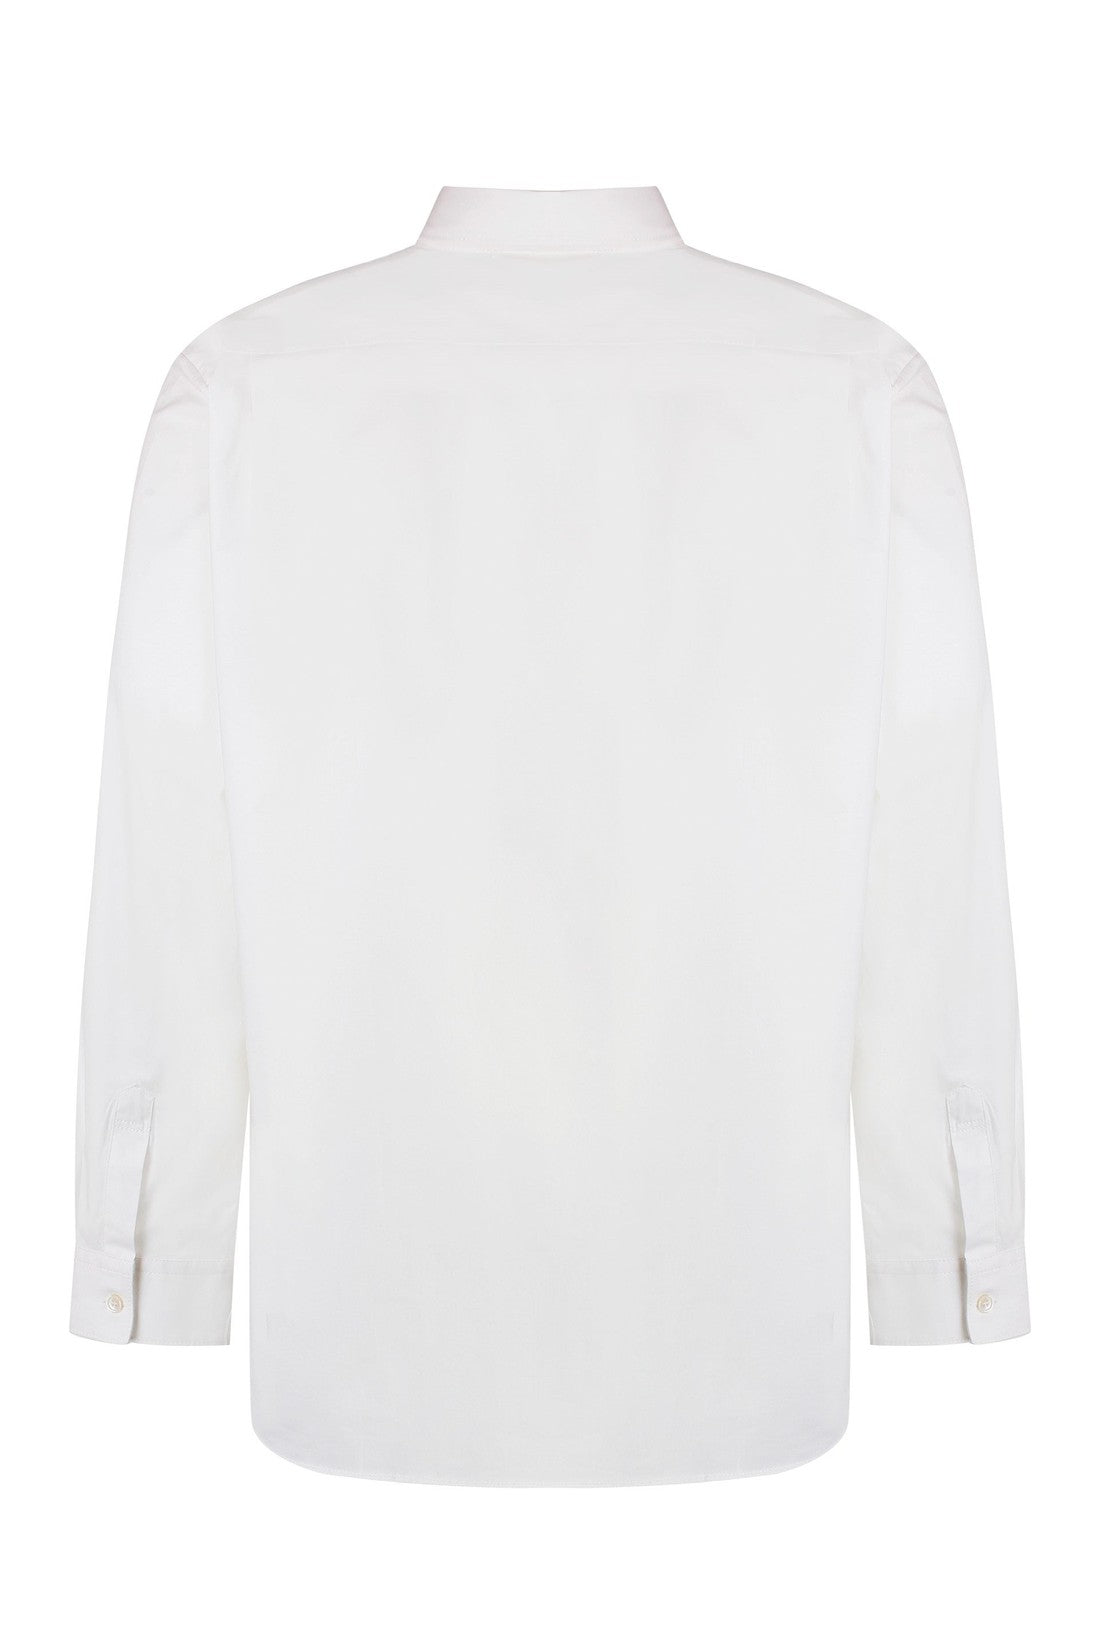 Acne Studios-OUTLET-SALE-Cotton shirt-ARCHIVIST